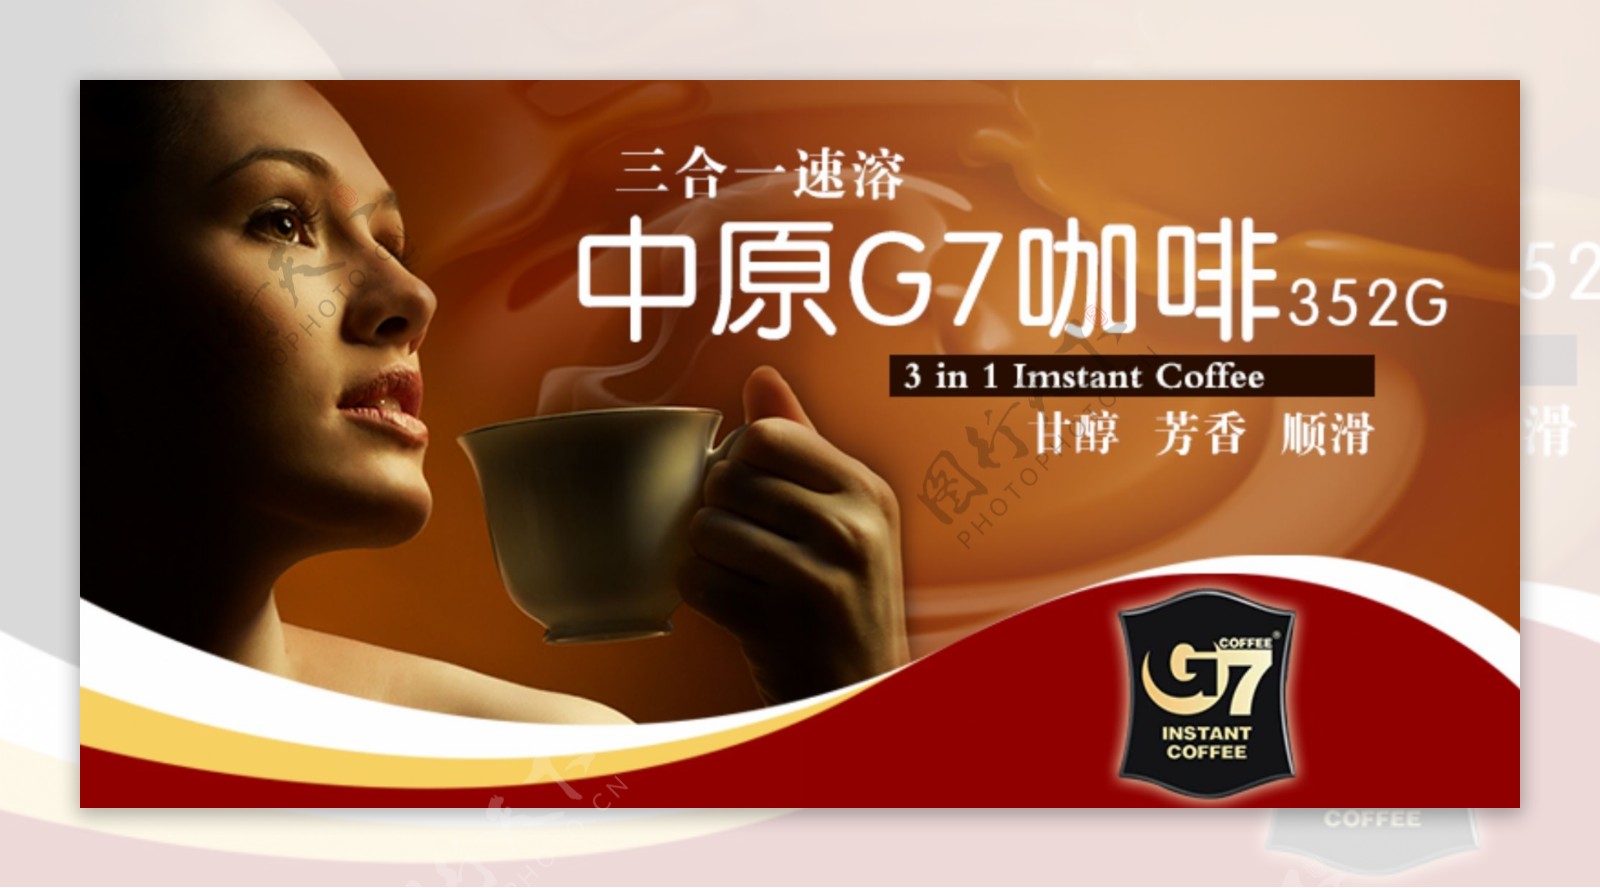 中原G7咖啡